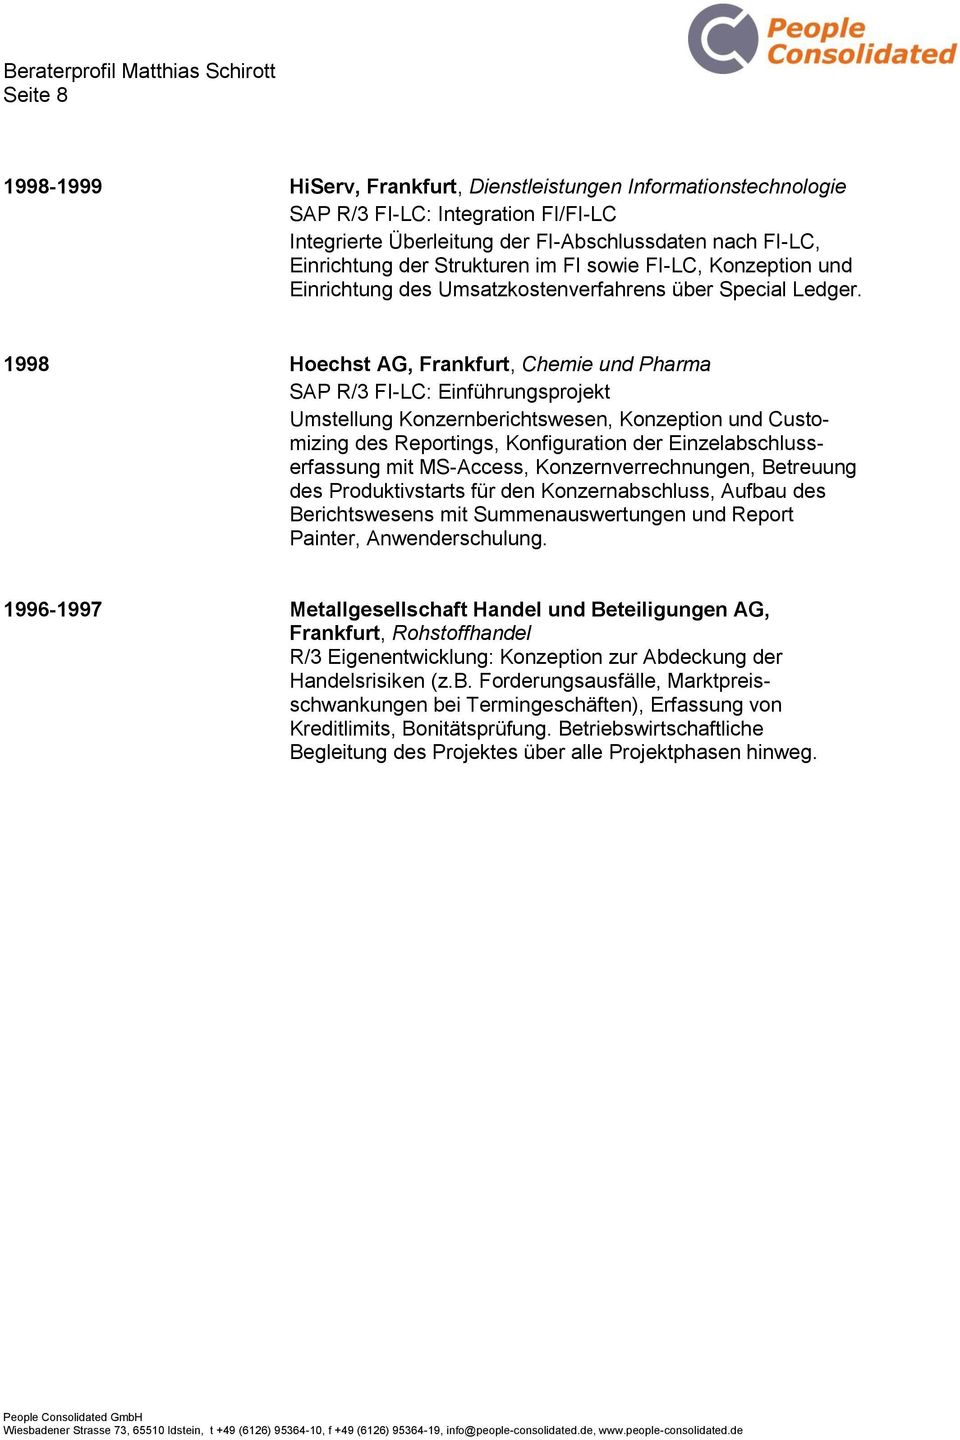 1998 Hoechst AG, Frankfurt, Chemie und Pharma SAP R/3 FI-LC: Einführungsprojekt Umstellung Konzernberichtswesen, Konzeption und Customizing des Reportings, Konfiguration der Einzelabschlusserfassung